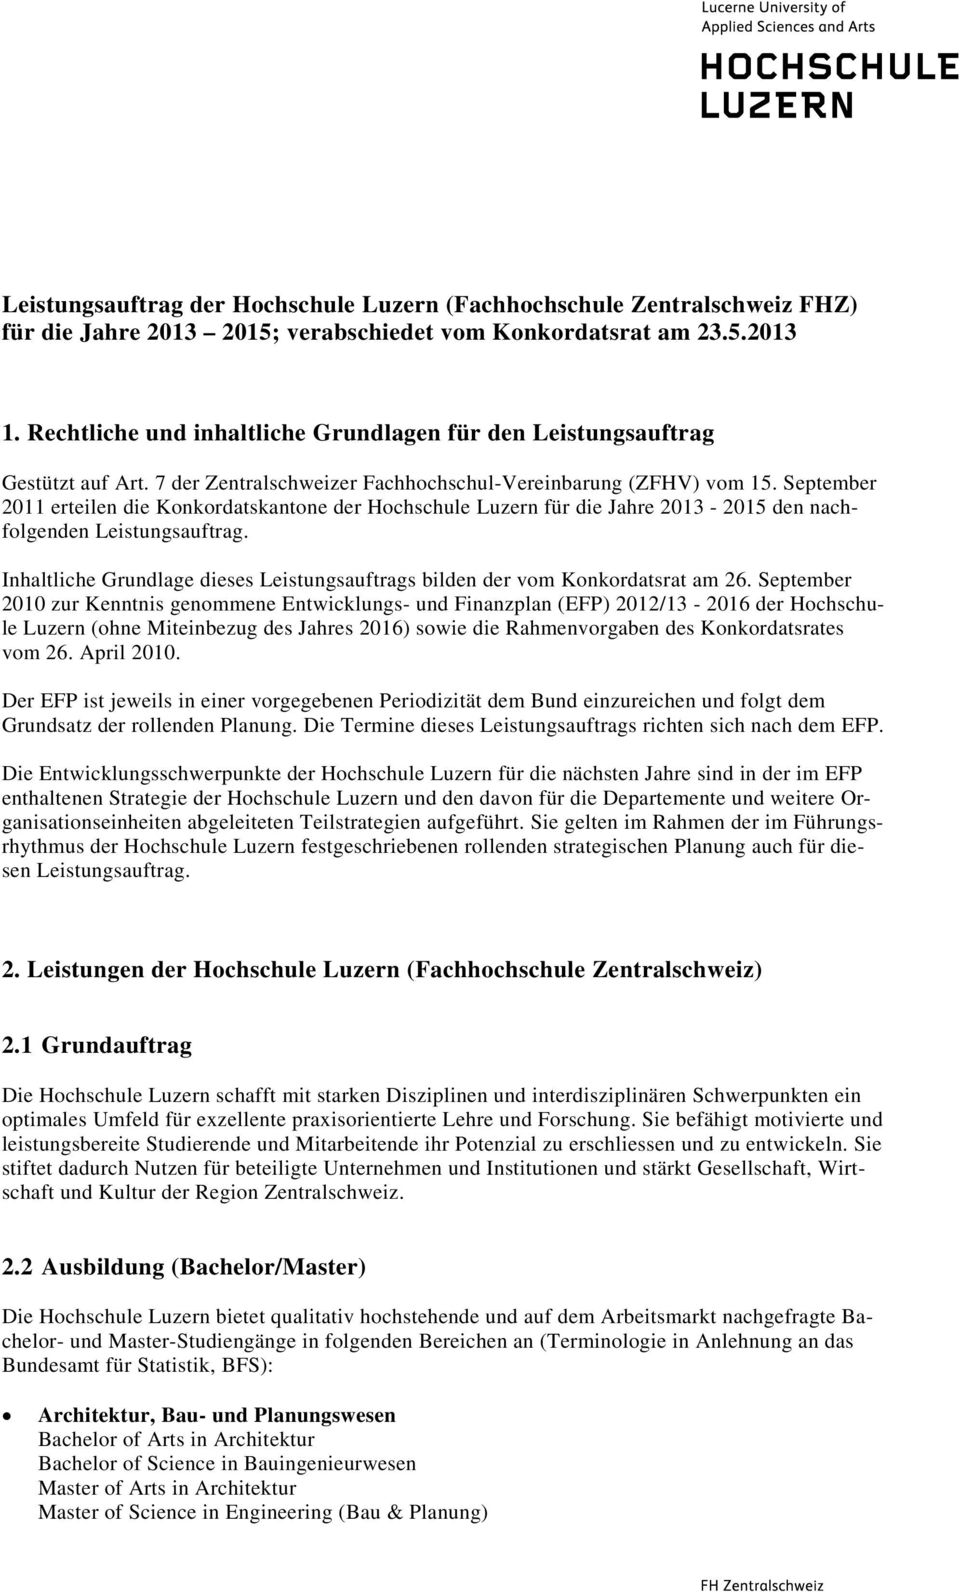 September 2011 erteilen die Konkordatskantone der Hochschule Luzern für die Jahre 2013-2015 den nachfolgenden Leistungsauftrag.